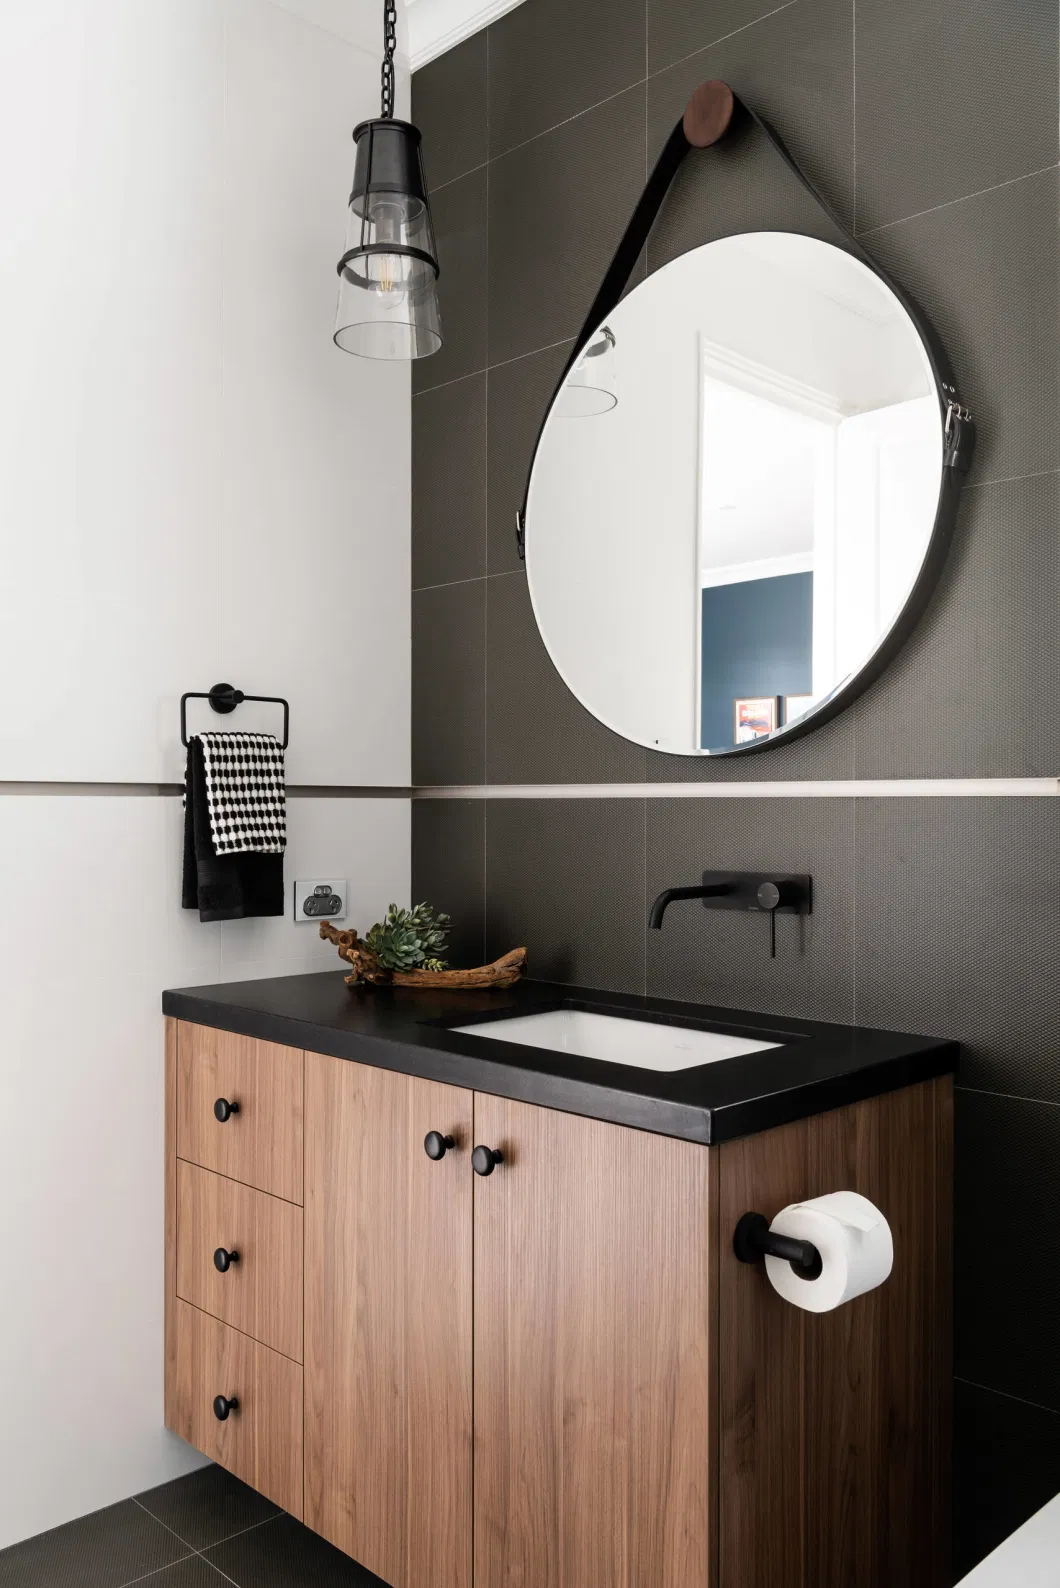 DIY Customize Undermount Basin Vanity Cabinet